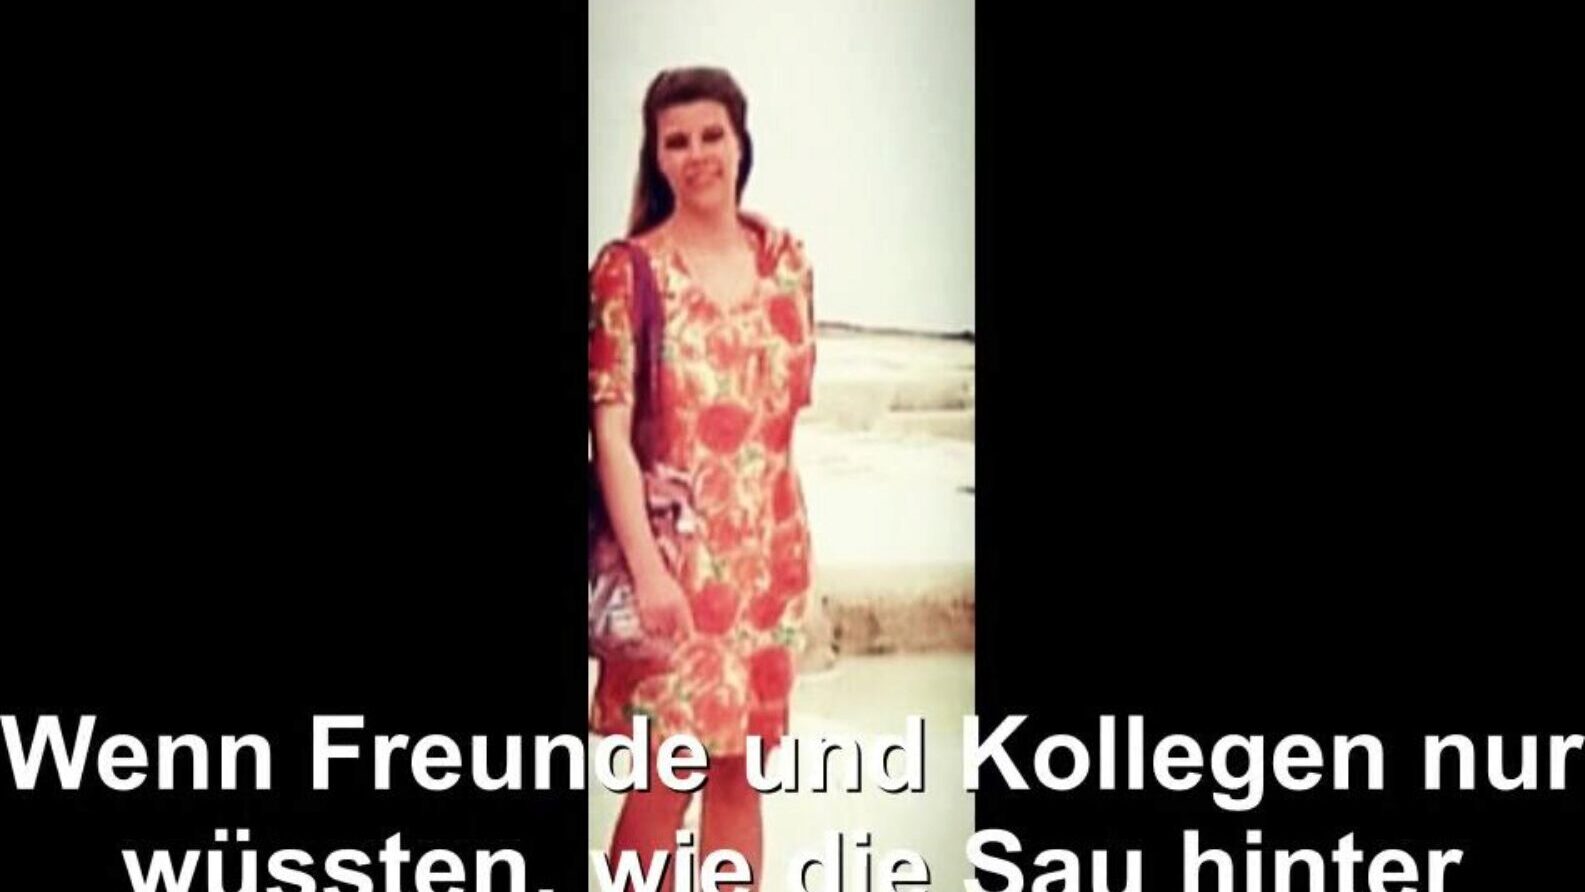 德国家庭主妇暴露，免费管德国高清色情BD观看德国家庭主妇暴露在xhamster上的剪辑，最大的高清fucky-fucky管网站上有大量的免费管德国德国妻子和自制的色情电影场景